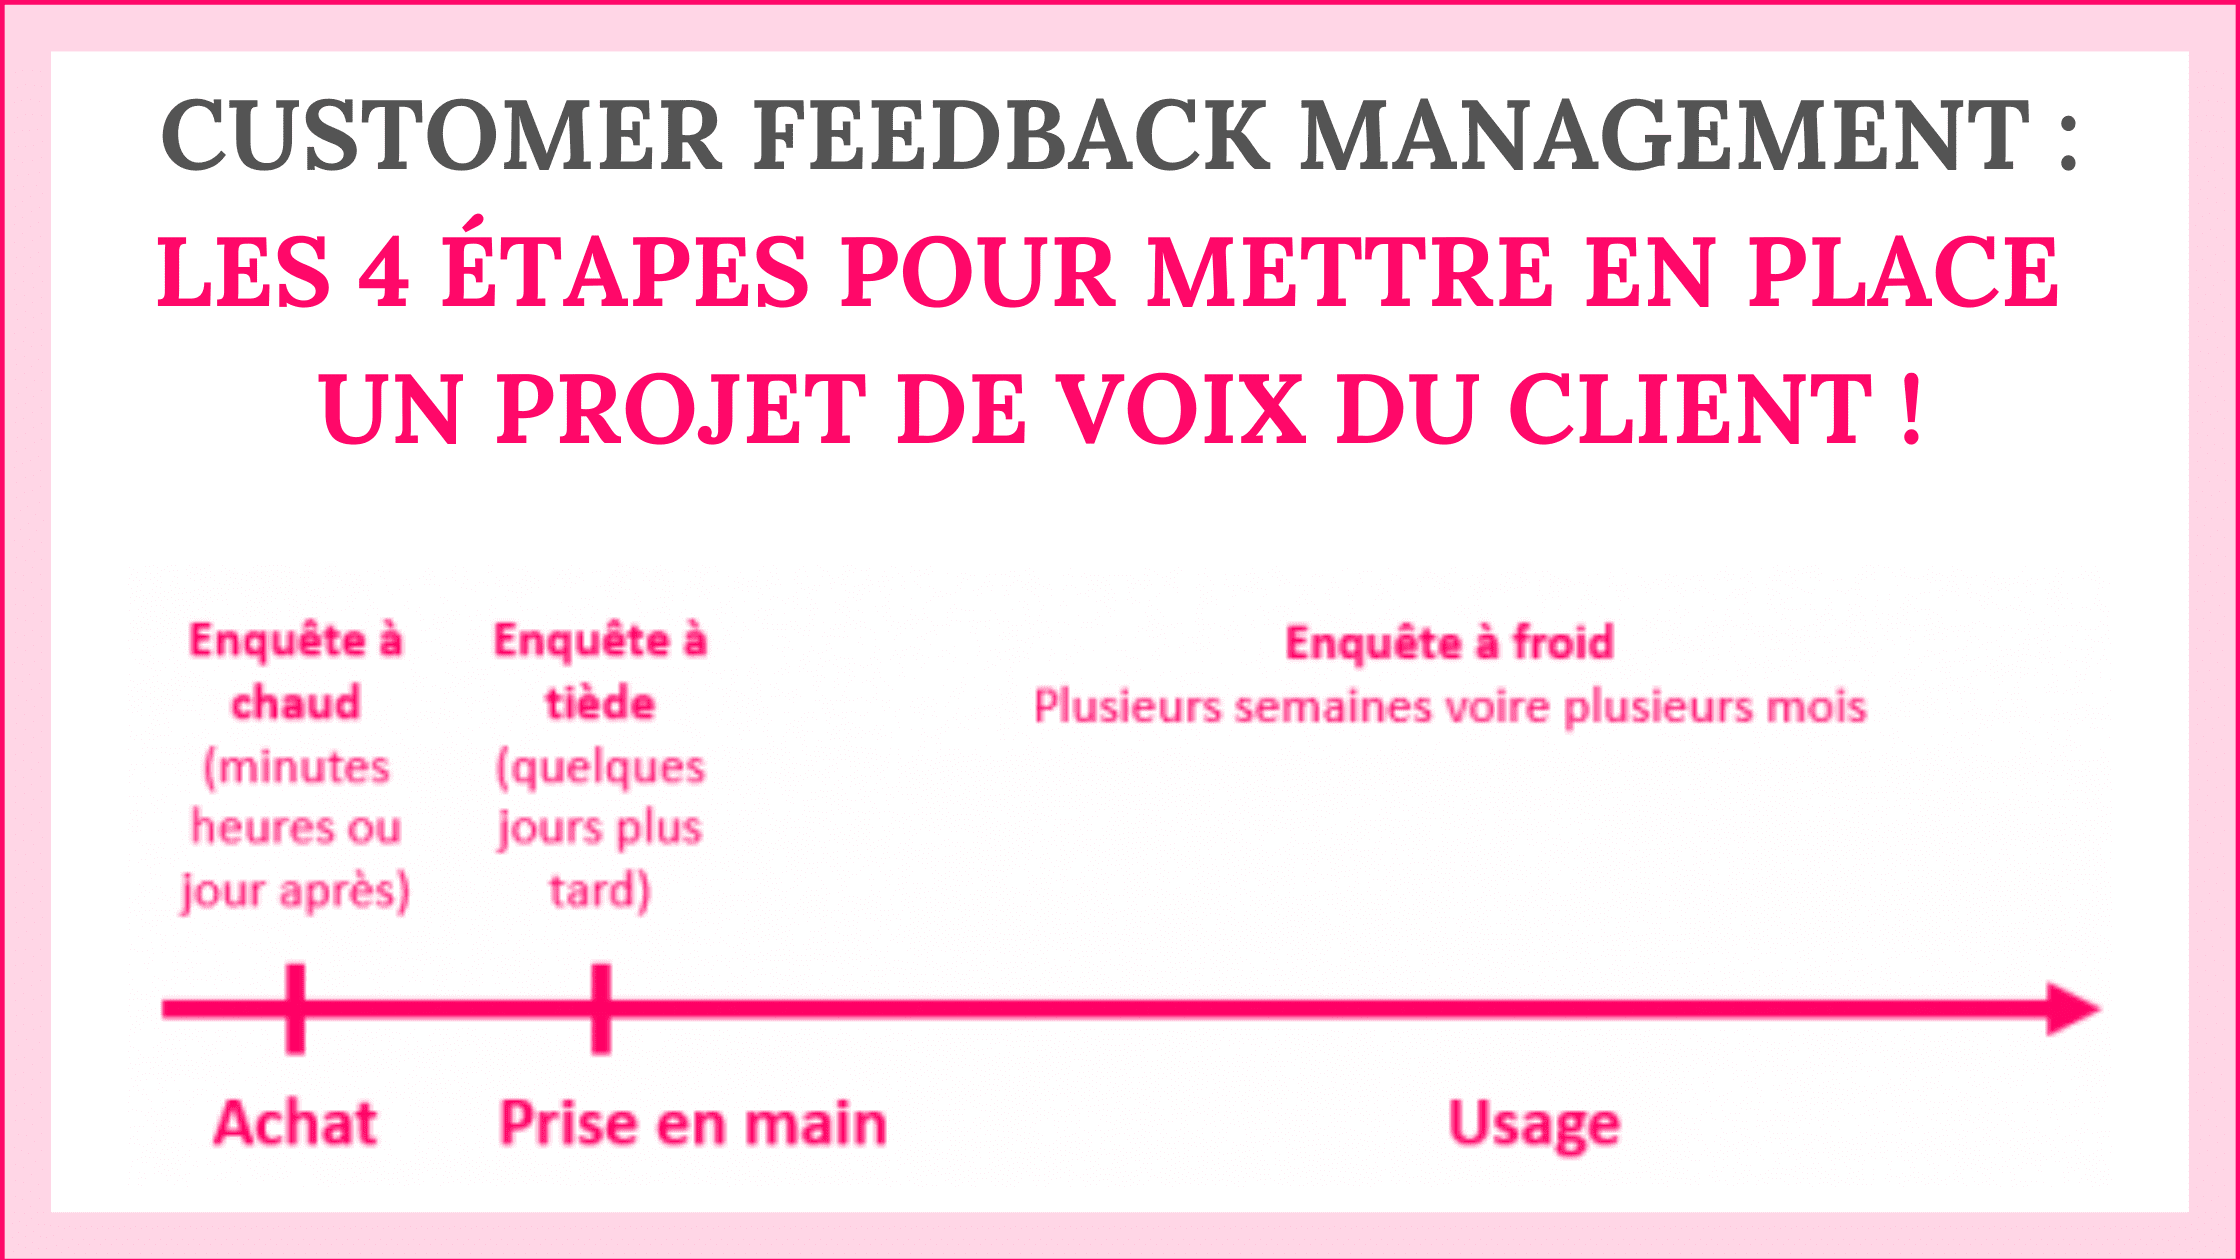 Customer Feedback Management : les 4 étapes pour mettre en place un projet de Voix du Client ! 5